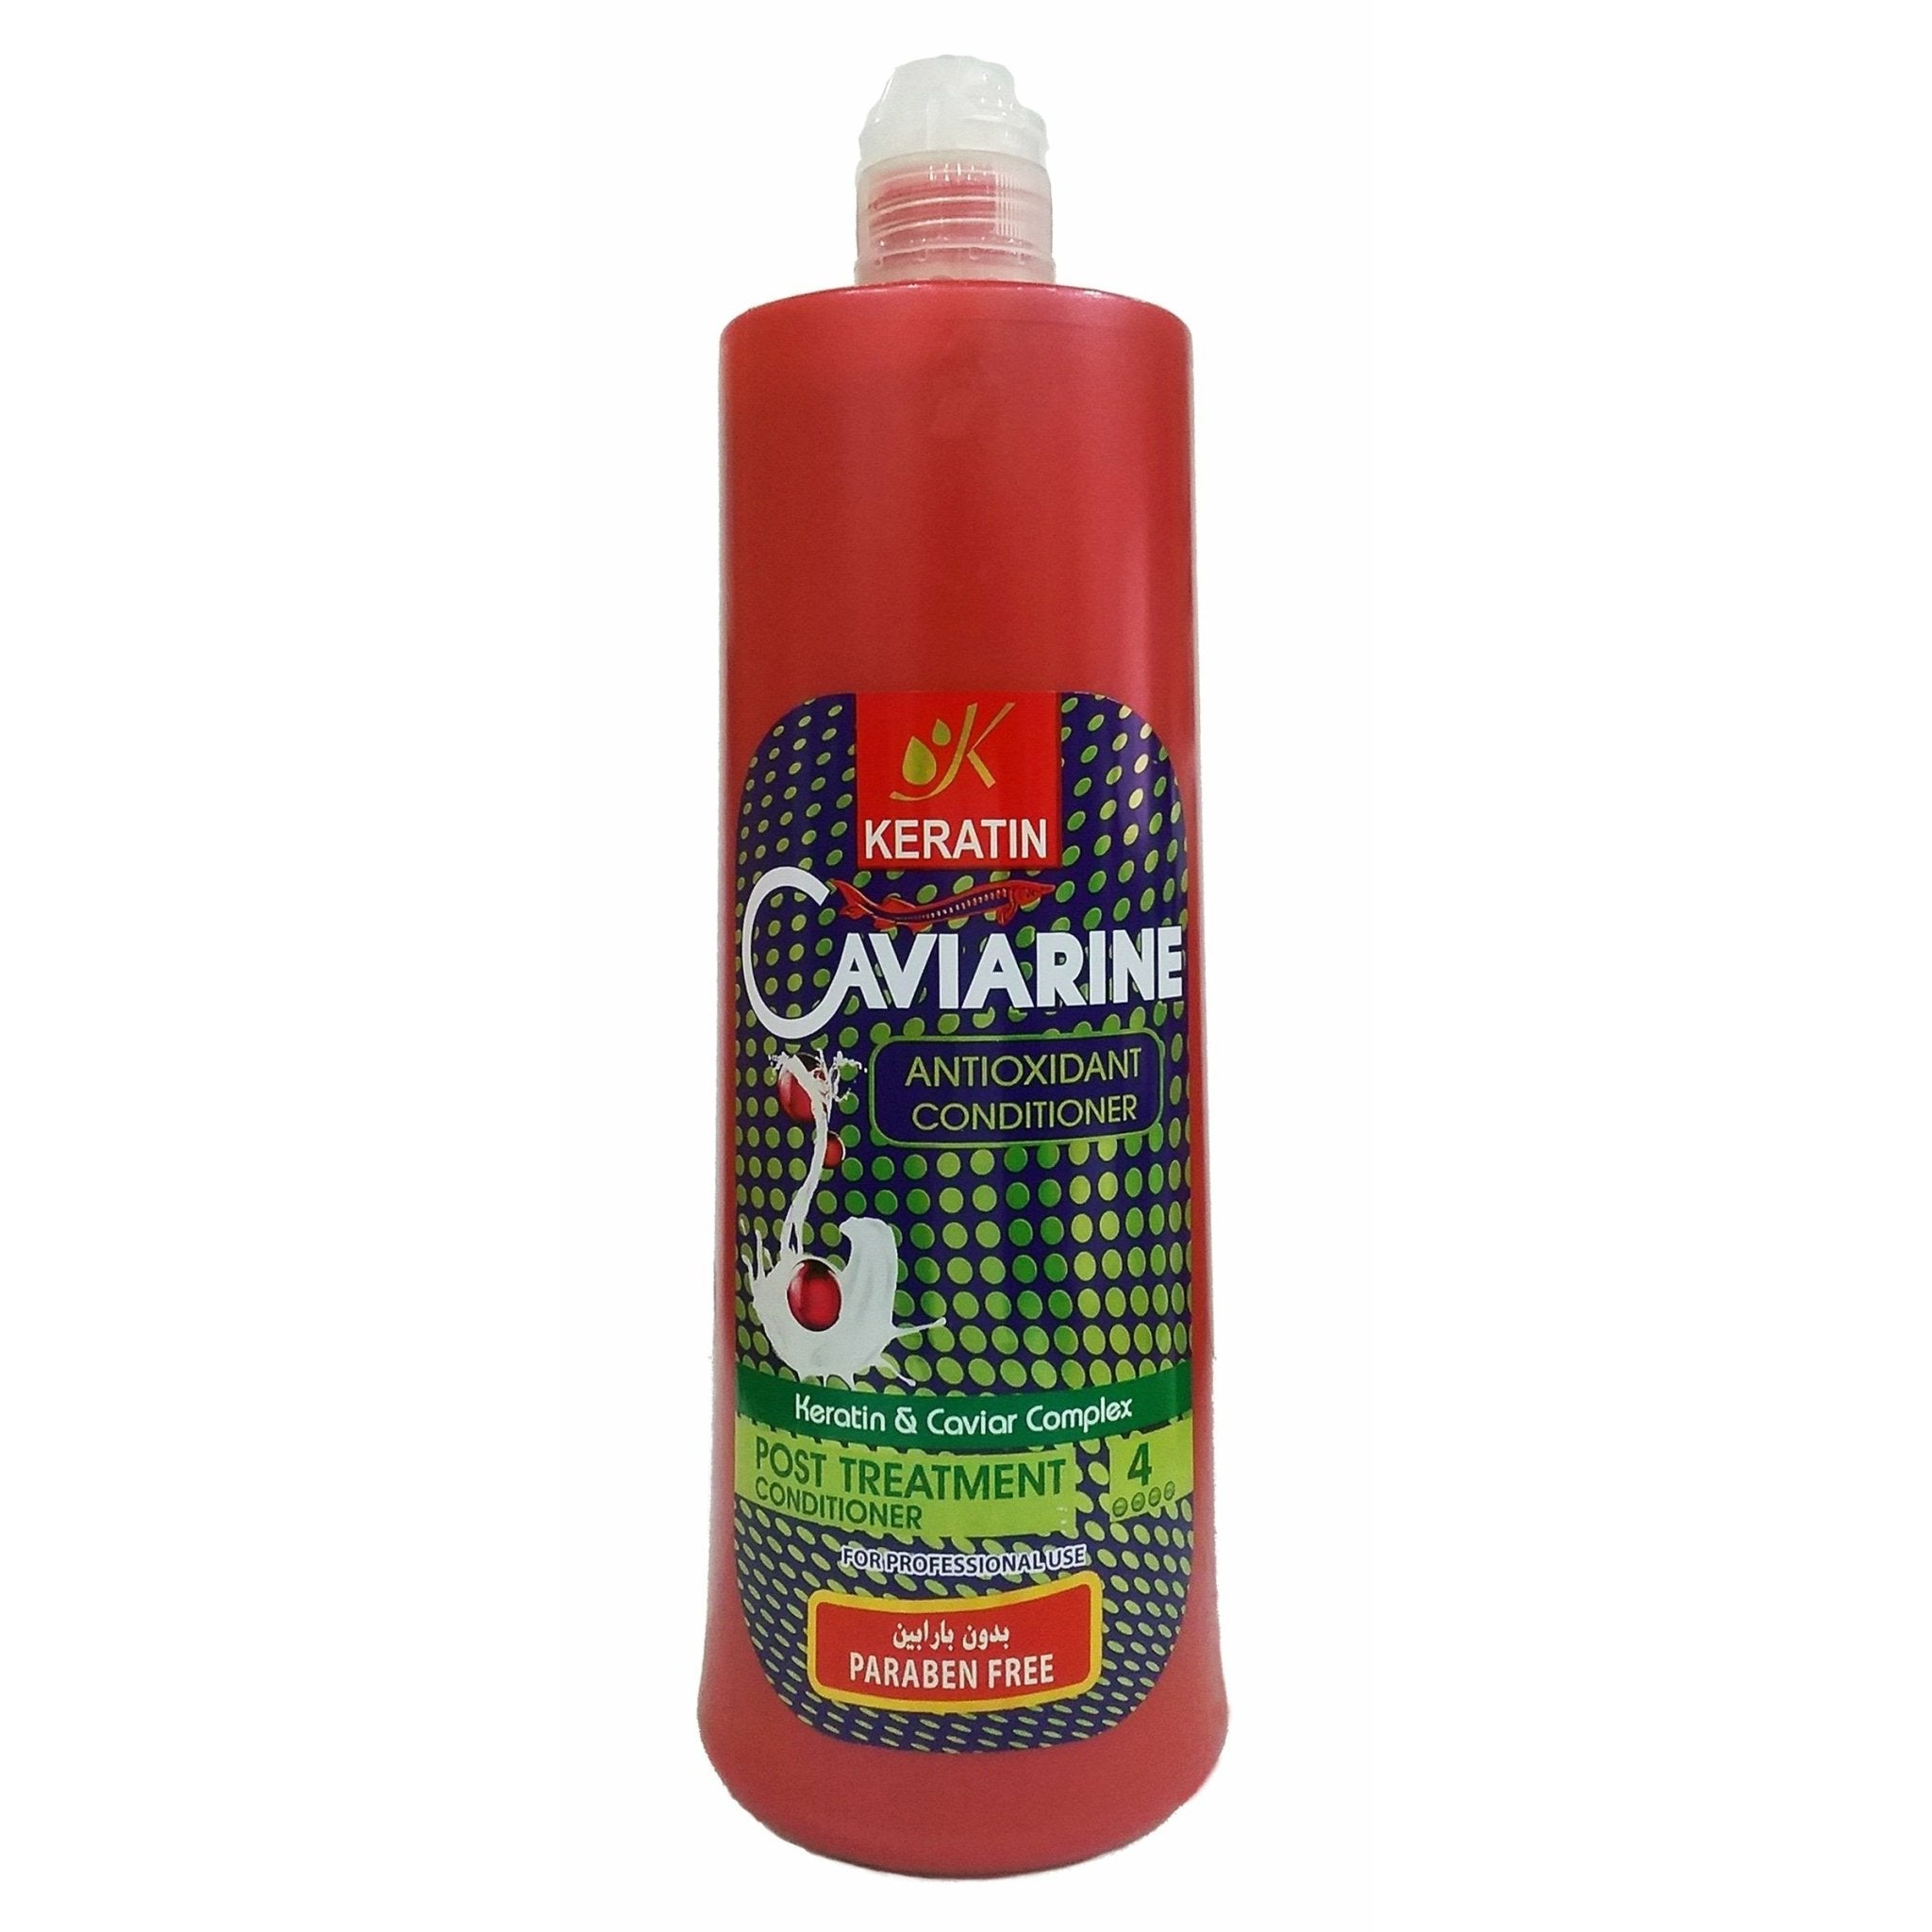 Anti Oxidant Conditioner Caviarine 1000 Ml - IZZAT DAOUK SA